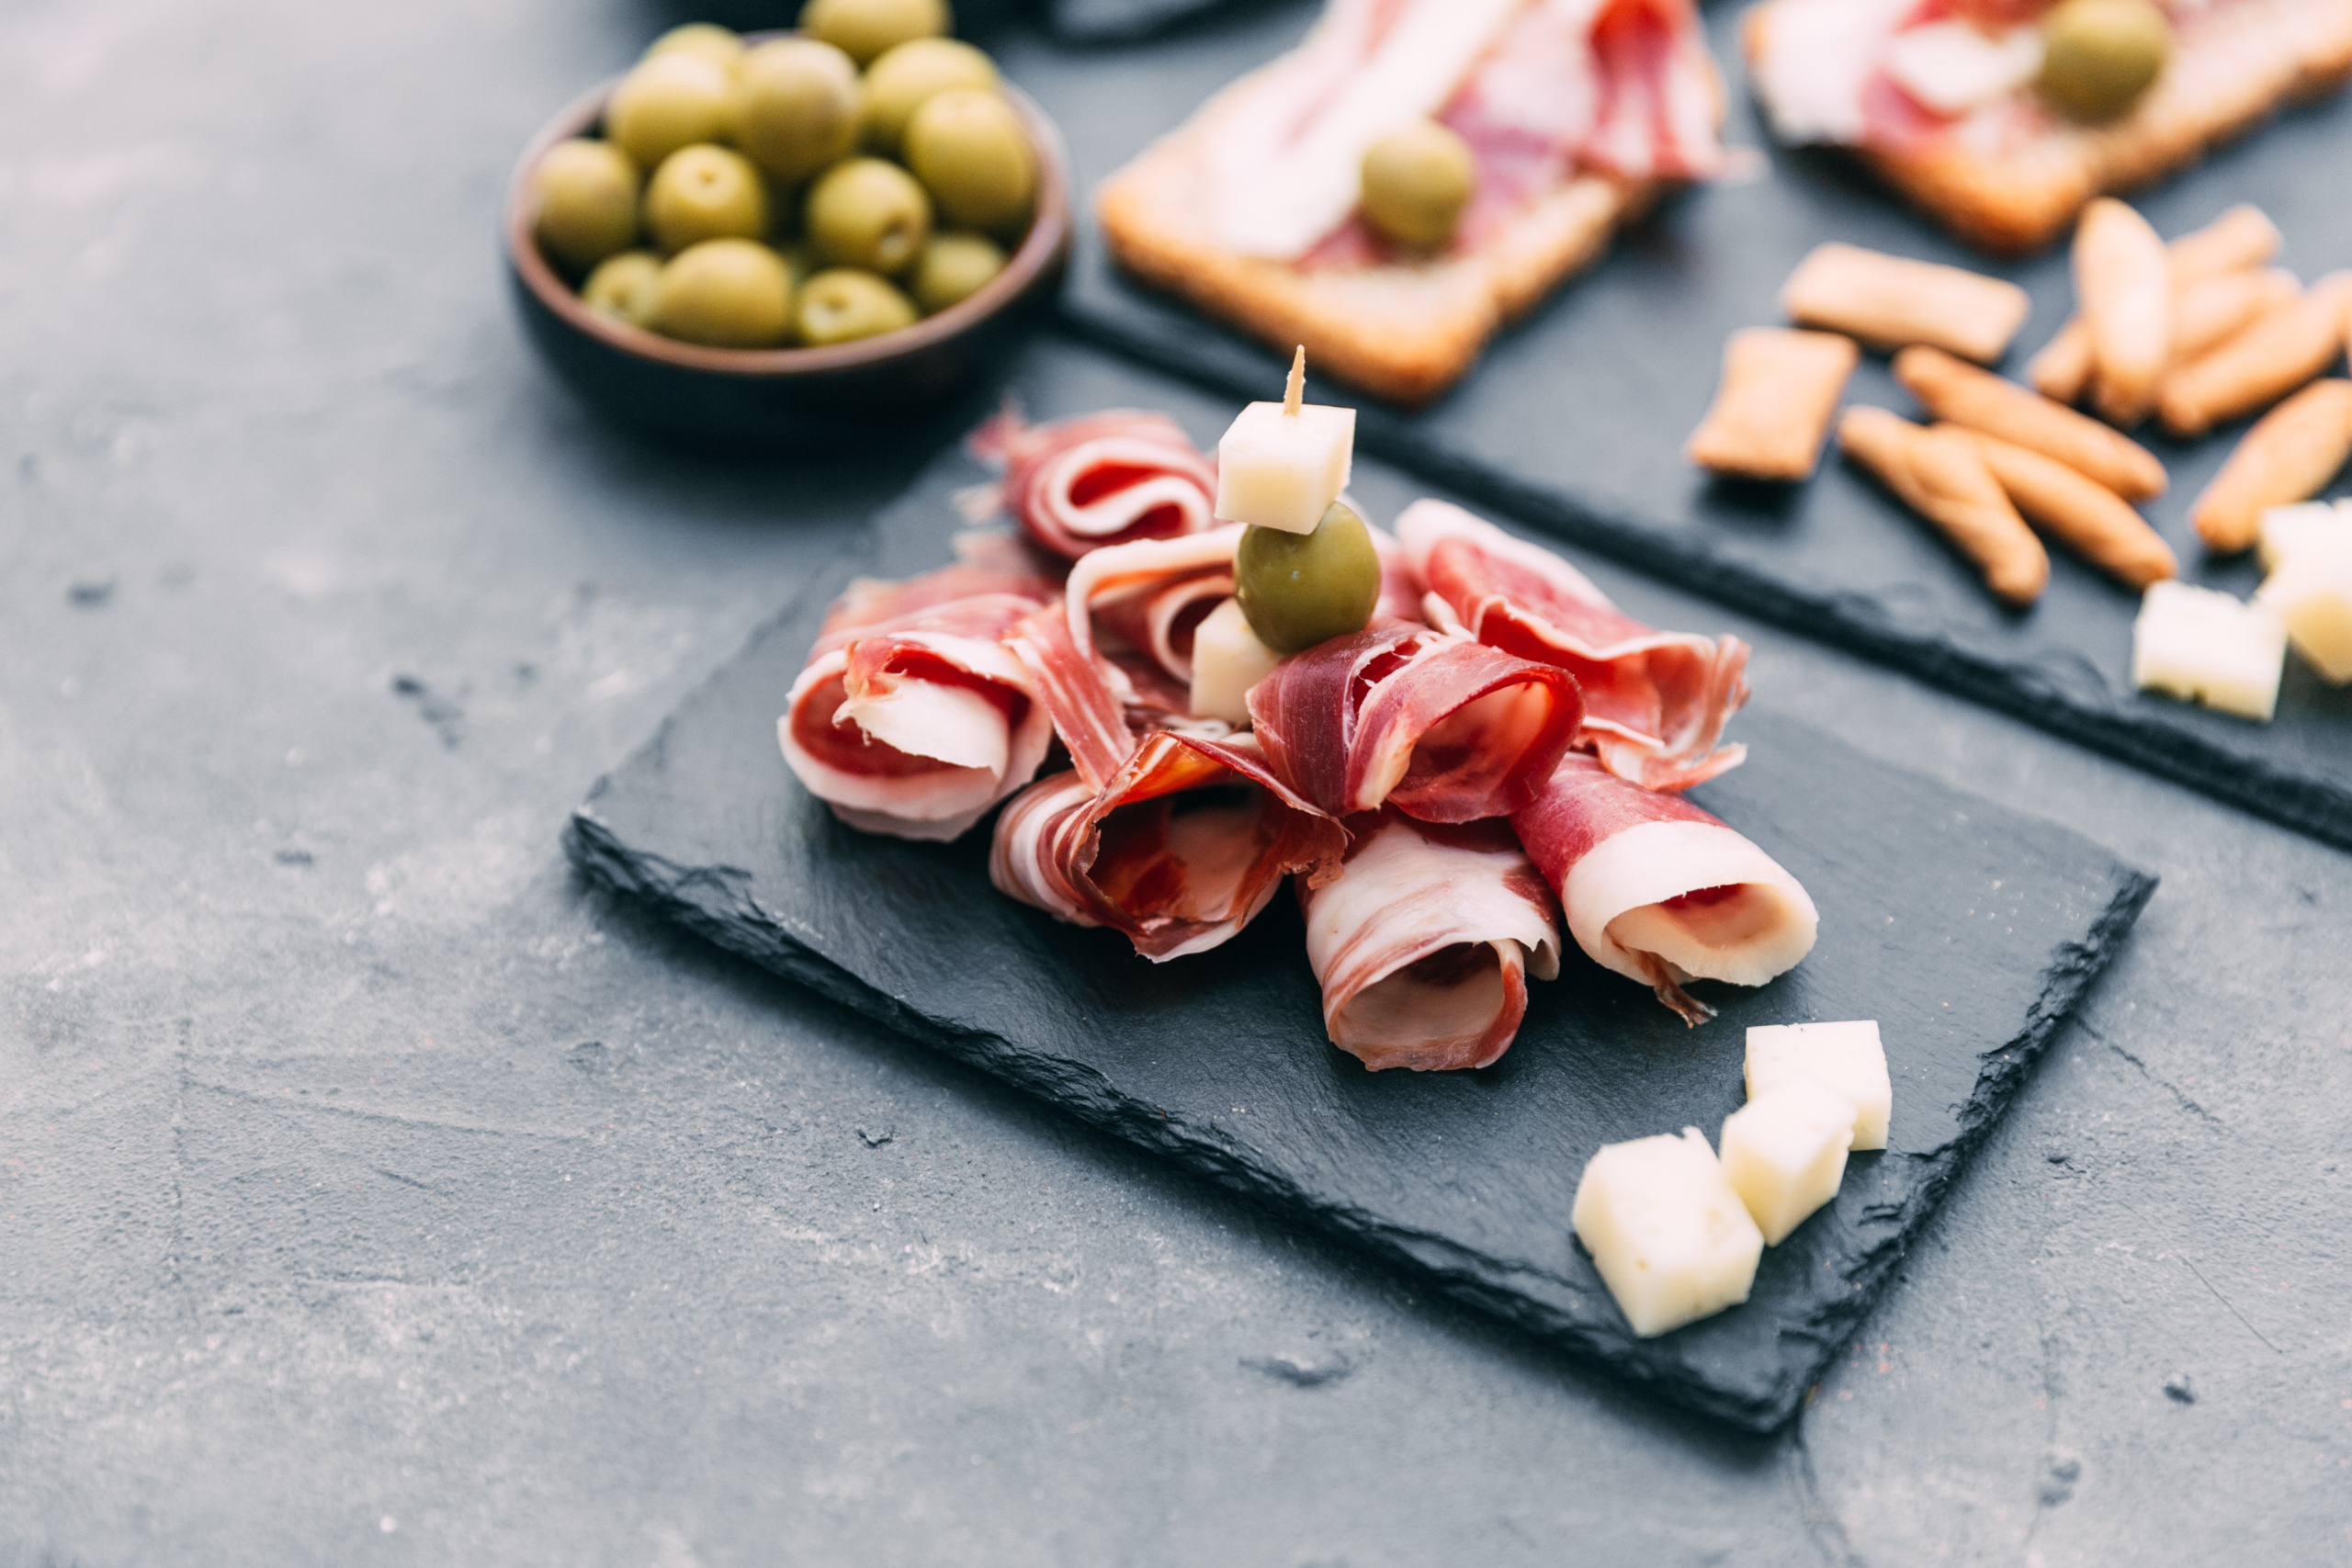 Giăm bông sống được coi là quốc túy, cũng là món ăn phụ kinh điển của Tây Ban Nha. (Ảnh: Shutterstock)